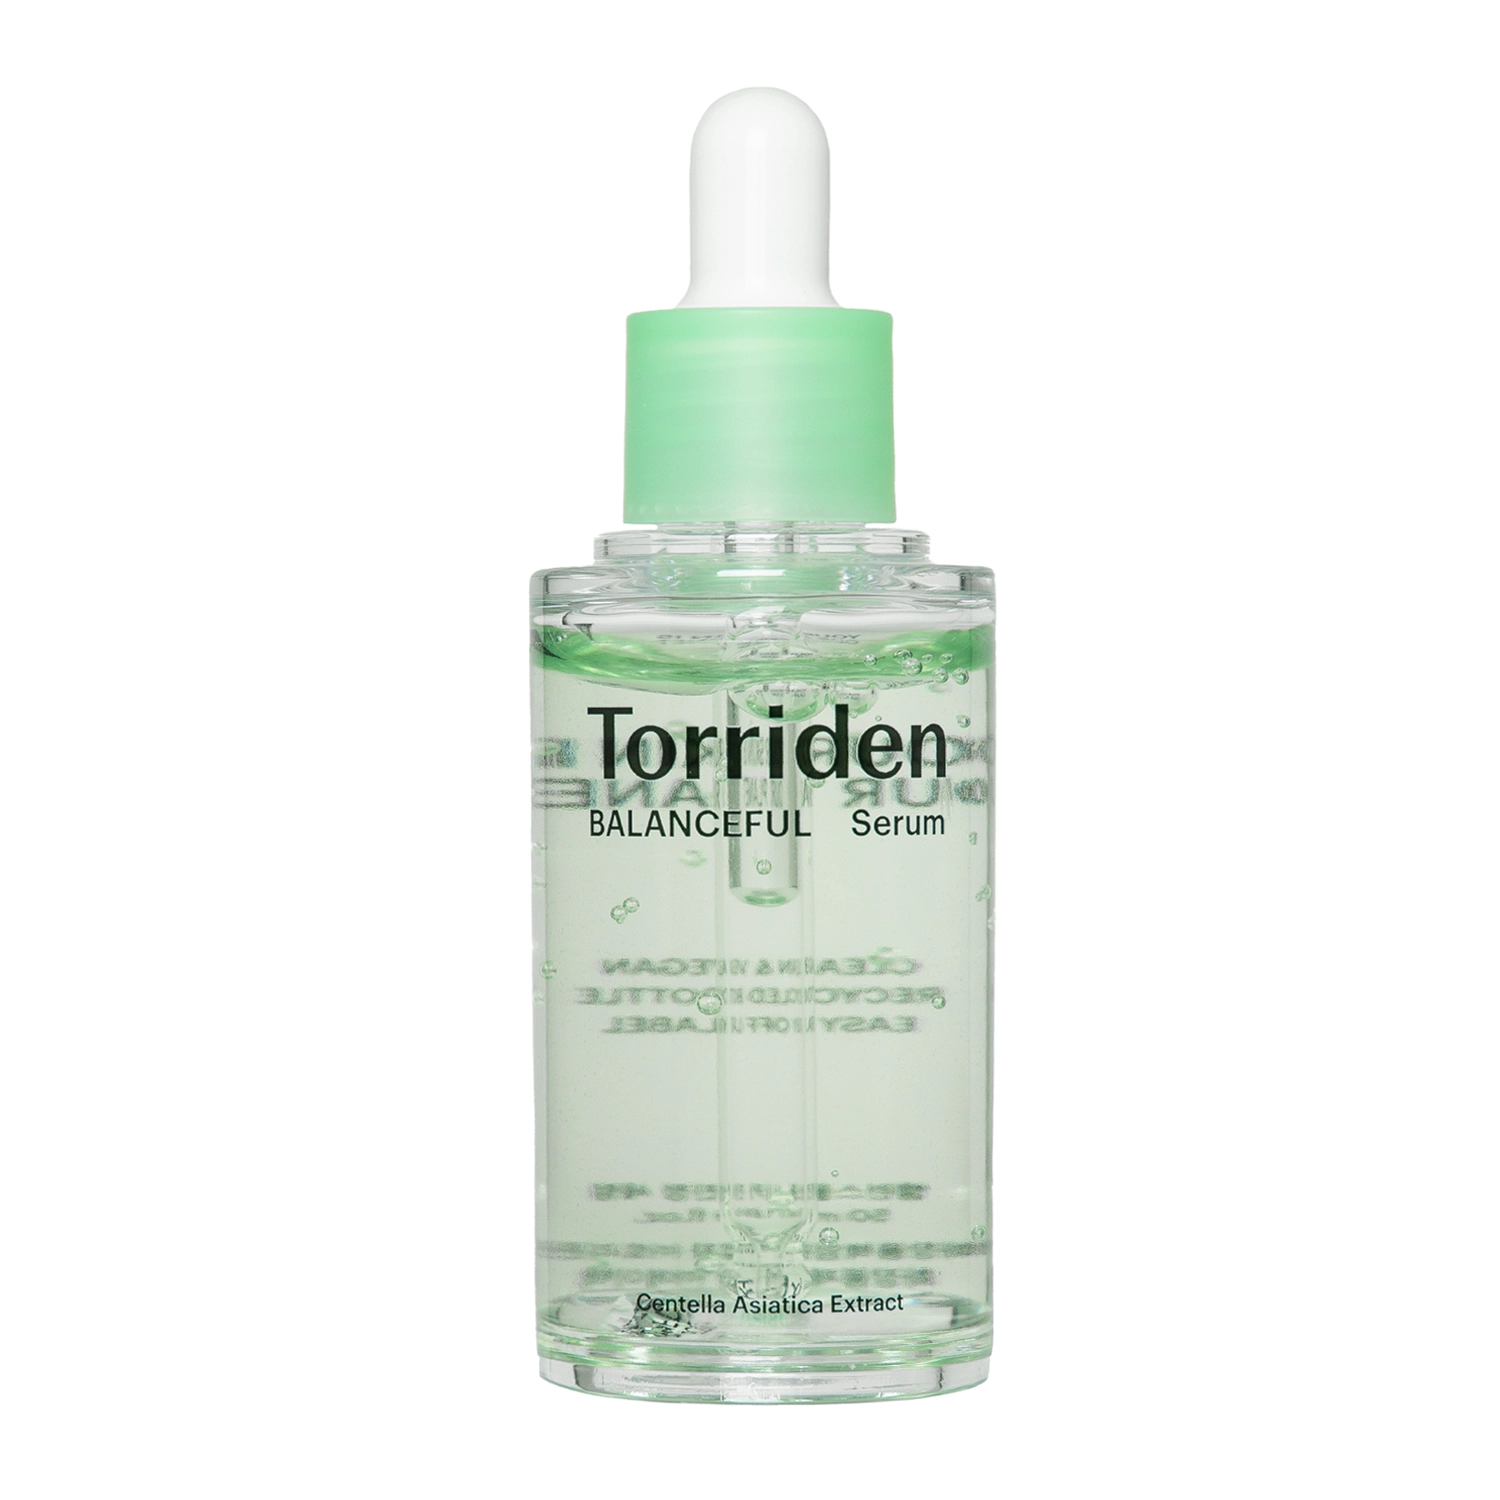 Torriden - Balanceful Cica Serum - Увлажняющая сыворотка для лица с центеллой азиатской - 50ml